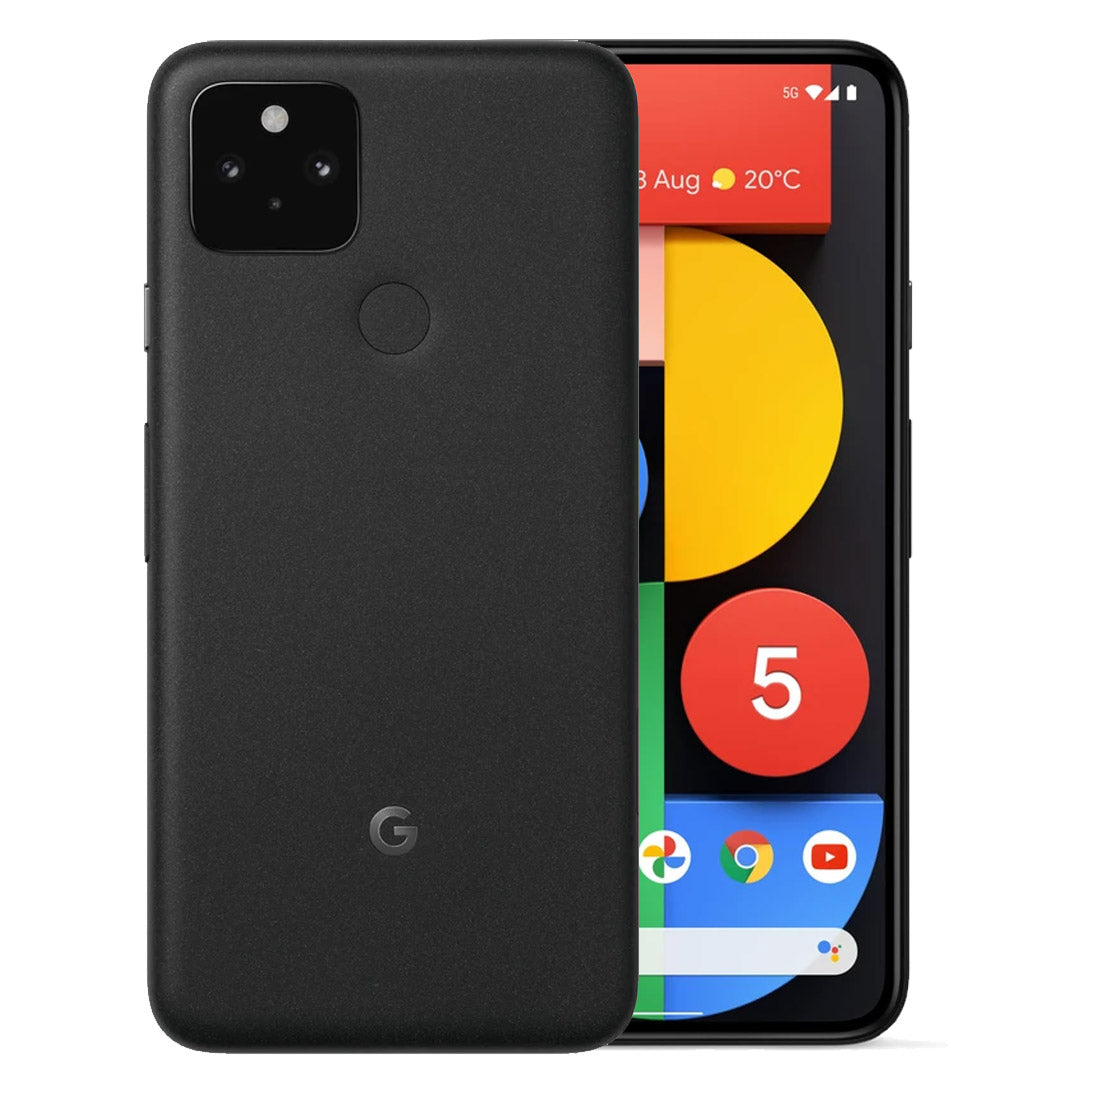 Google Pixel 5 128GB (Just Black) (Handset) ( Grade A ) (Refurbished)